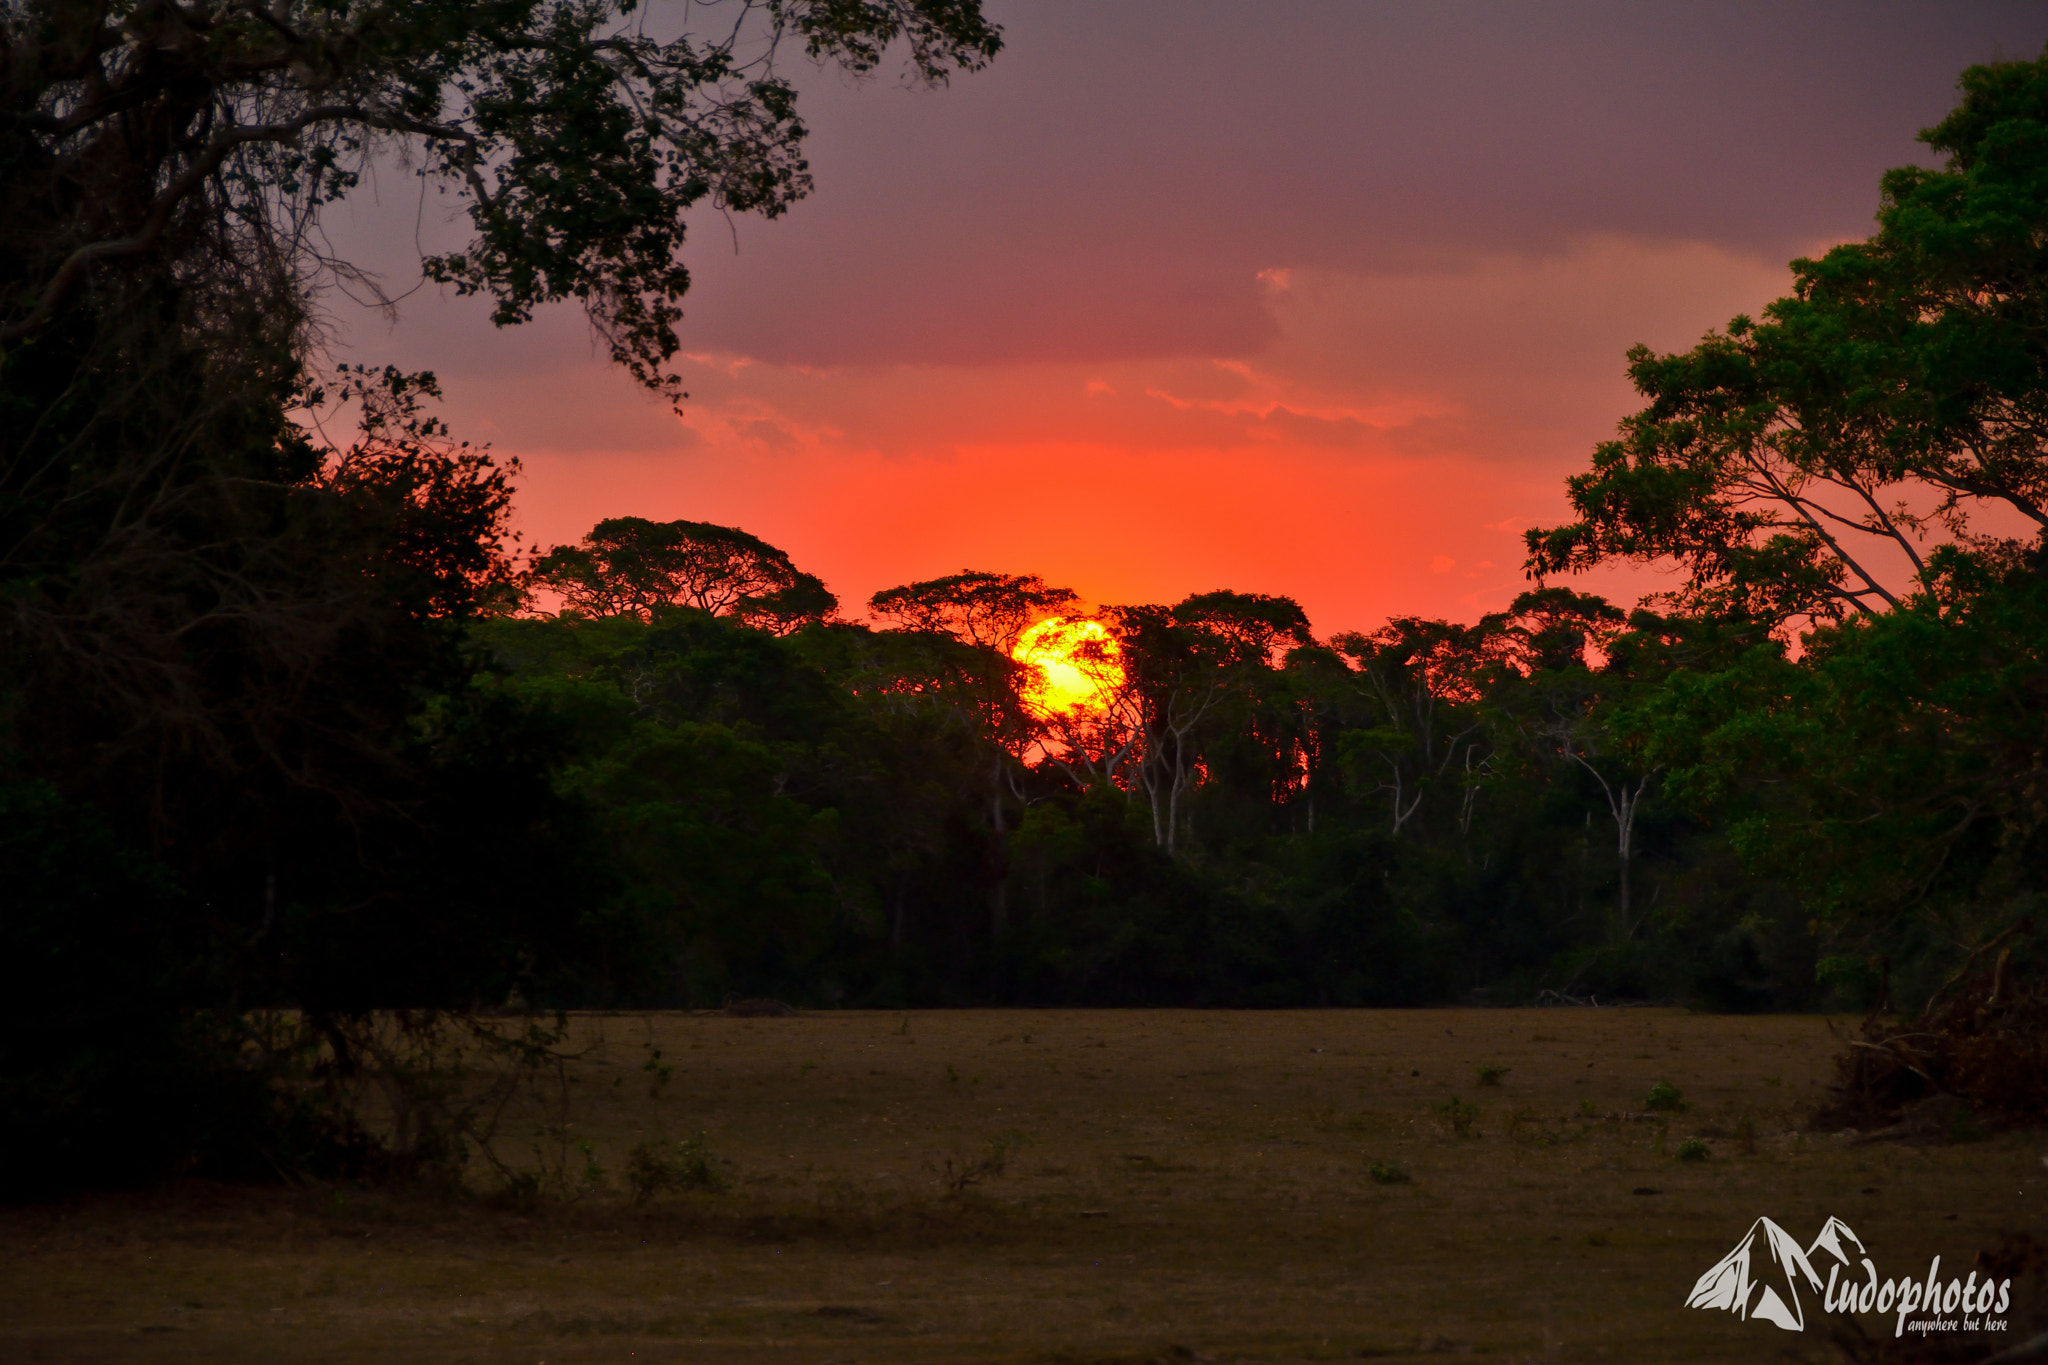 Nikon D7100 sample photo. Pantanal sunset photography